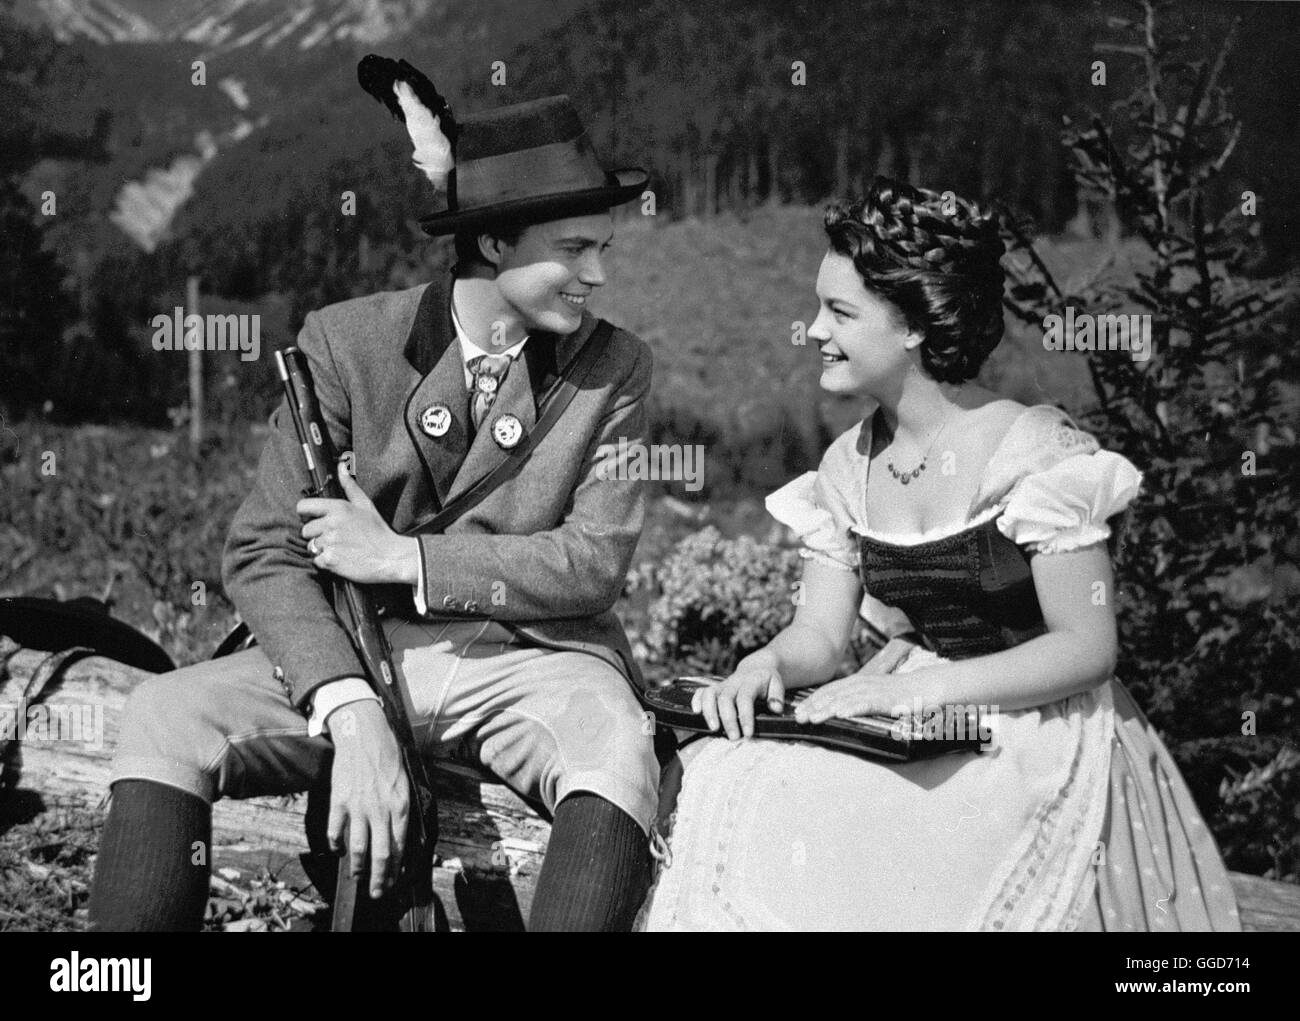 SISSI / Austria 1955 / Ernst Marischka Die junge Sissi (ROMY SCHNEIDER) und Kaiser Franz Joseph (KARLHEINZ BÖHM). Regie: Ernst Marischka Stock Photo